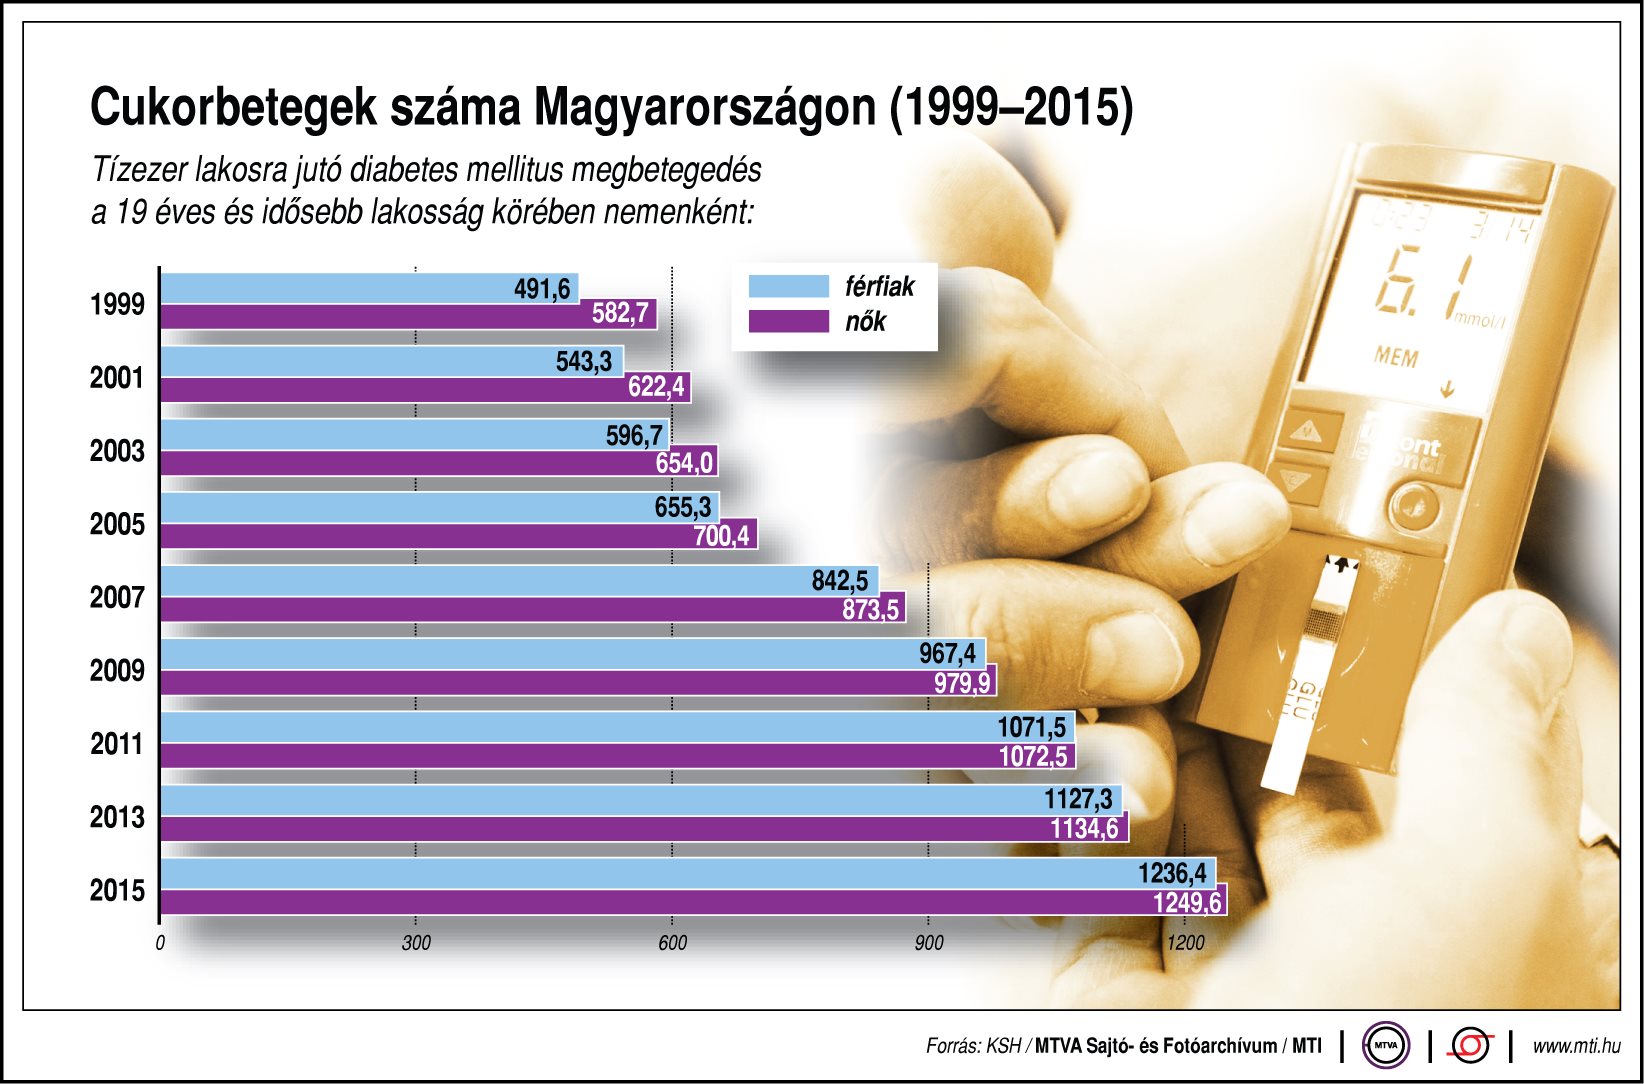 magyarország diabétesz diabetes type 1 diet